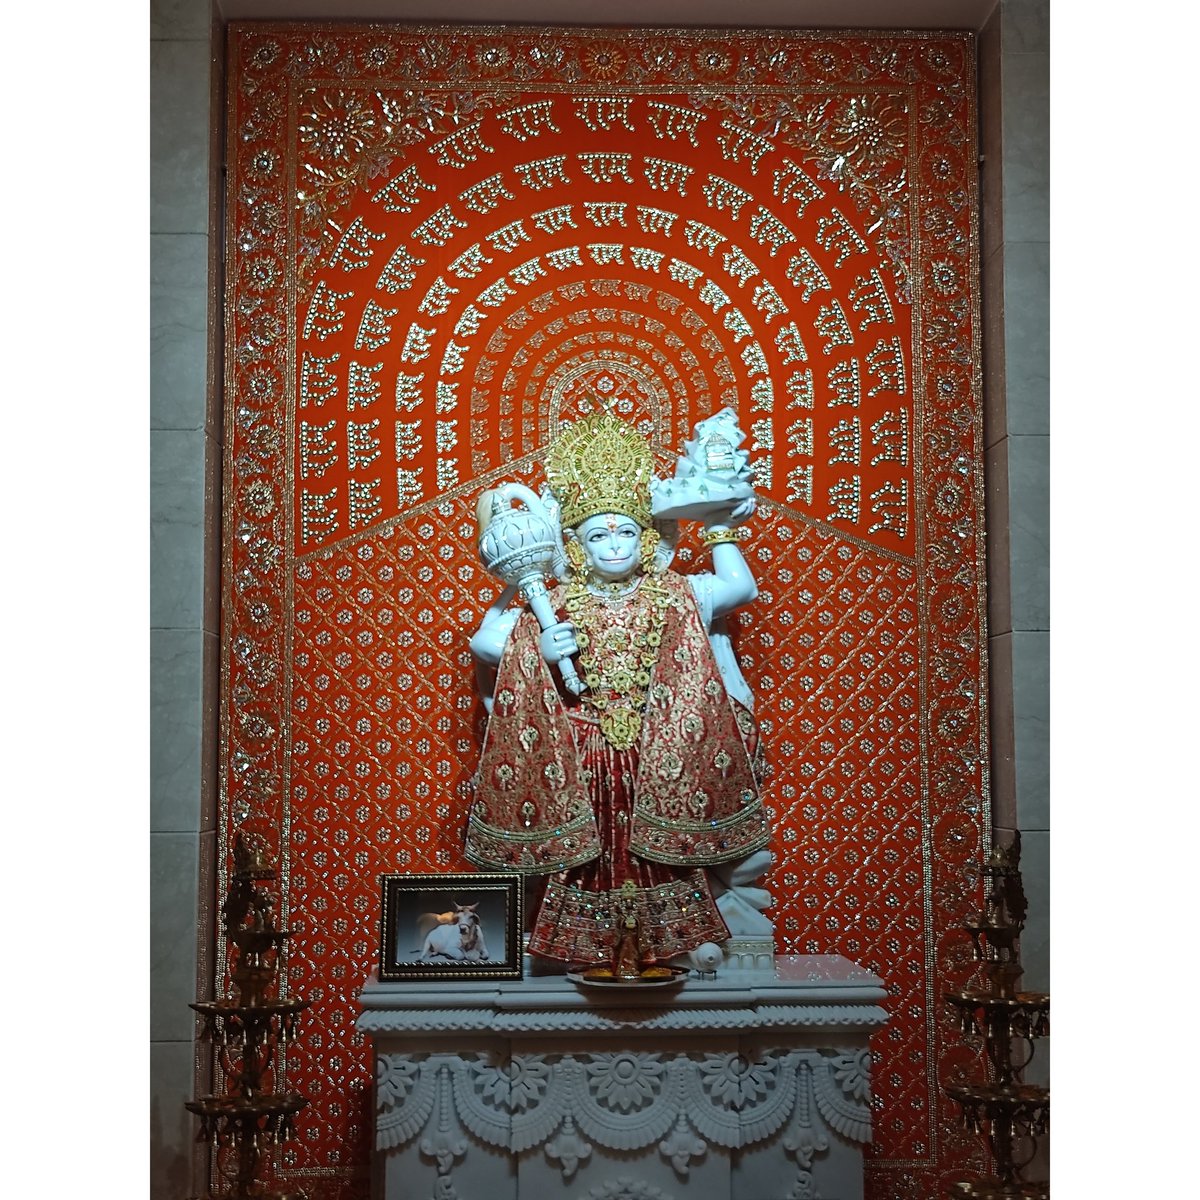 Jai Hanuman 🕉🛕🙏🏻🌸 Jai Shree Ram #HanumanJanmotsav